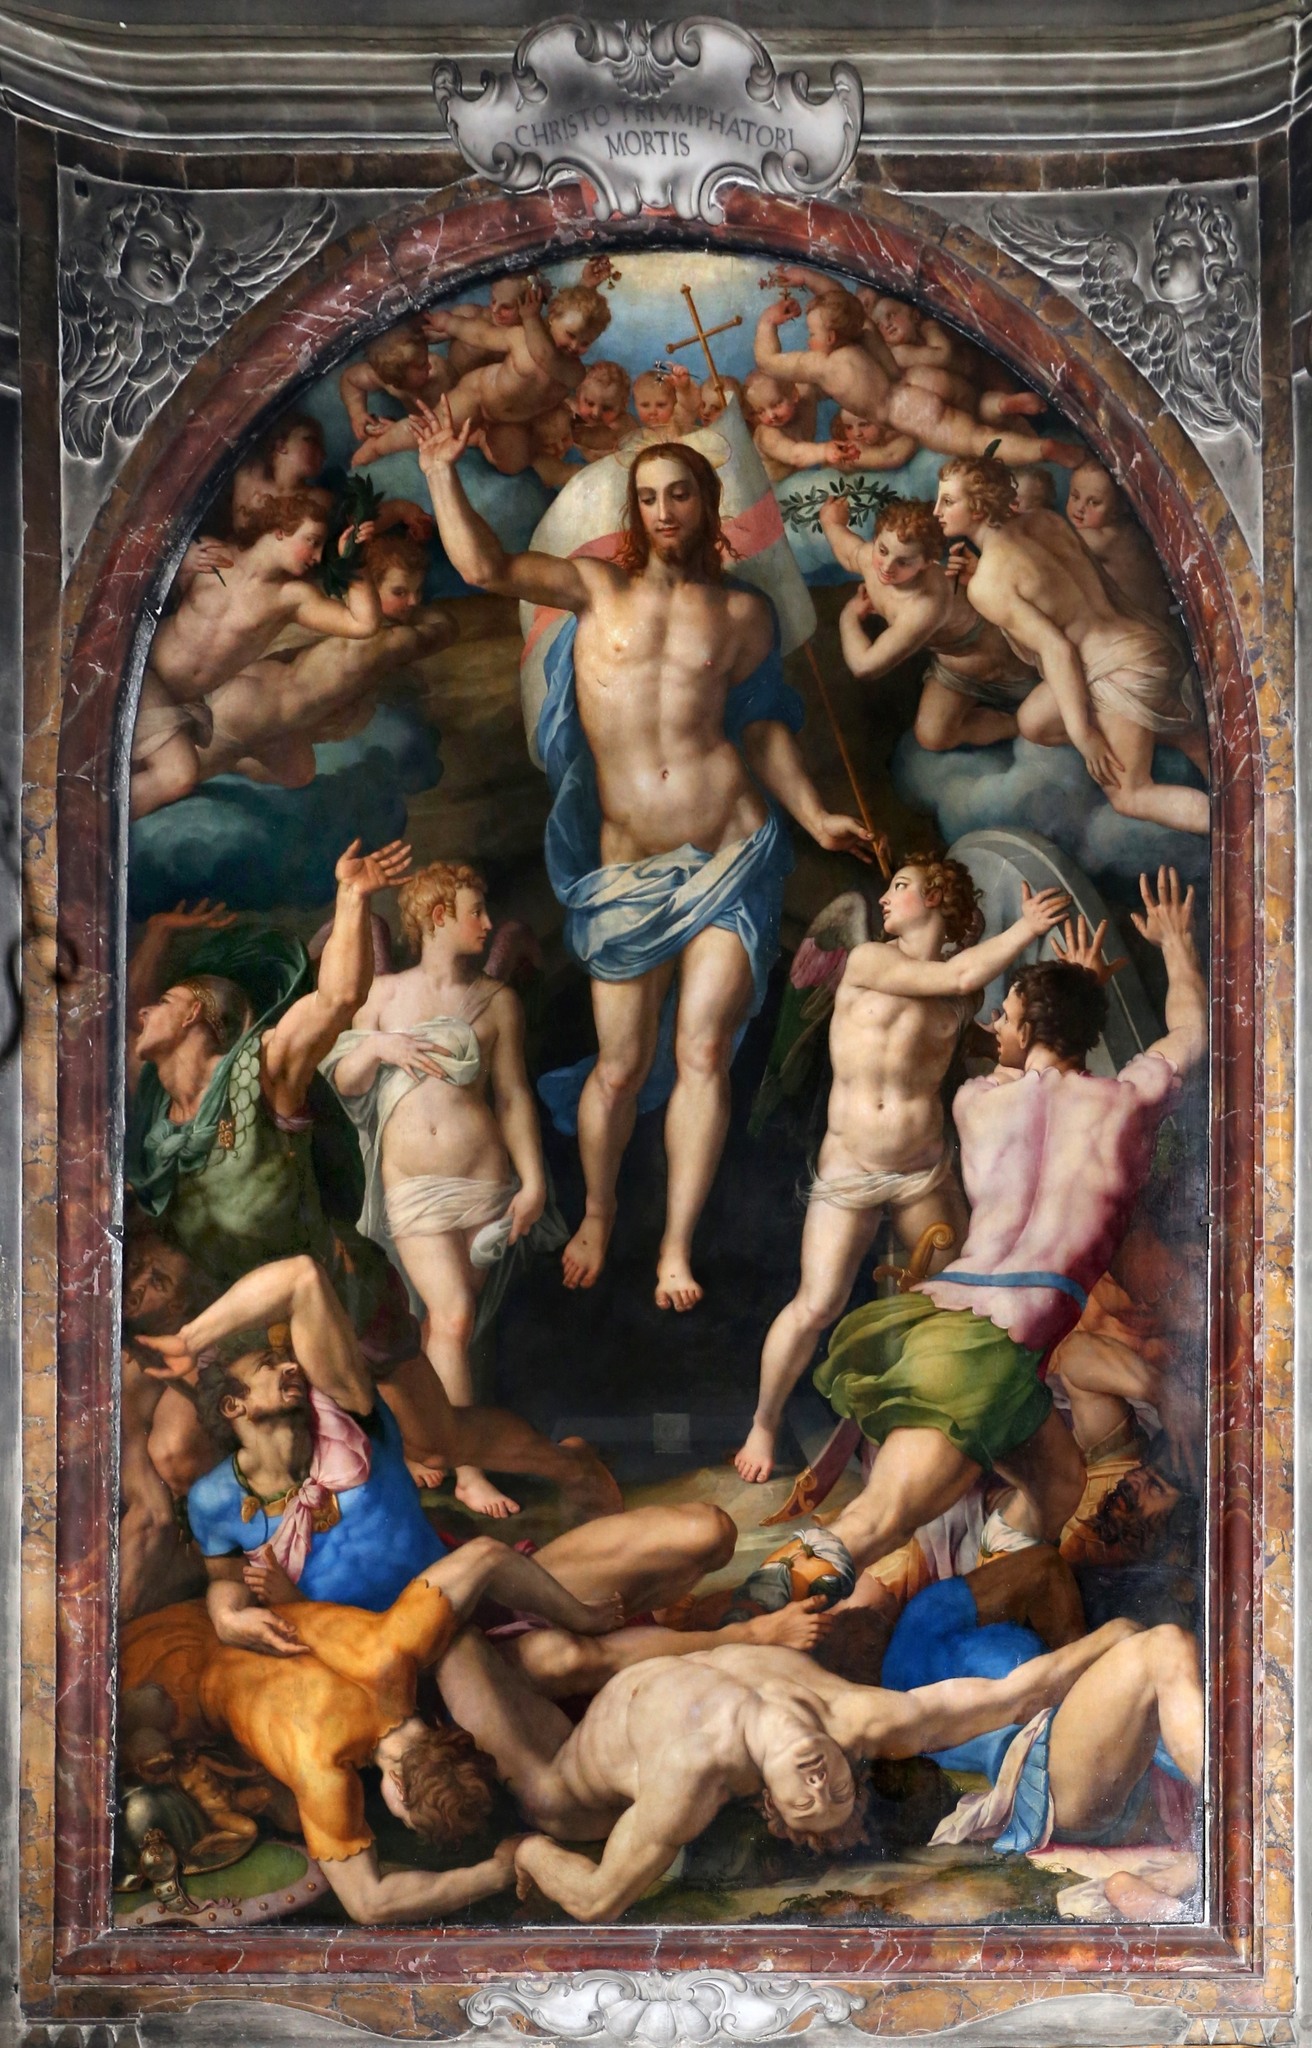 Catholic artwork